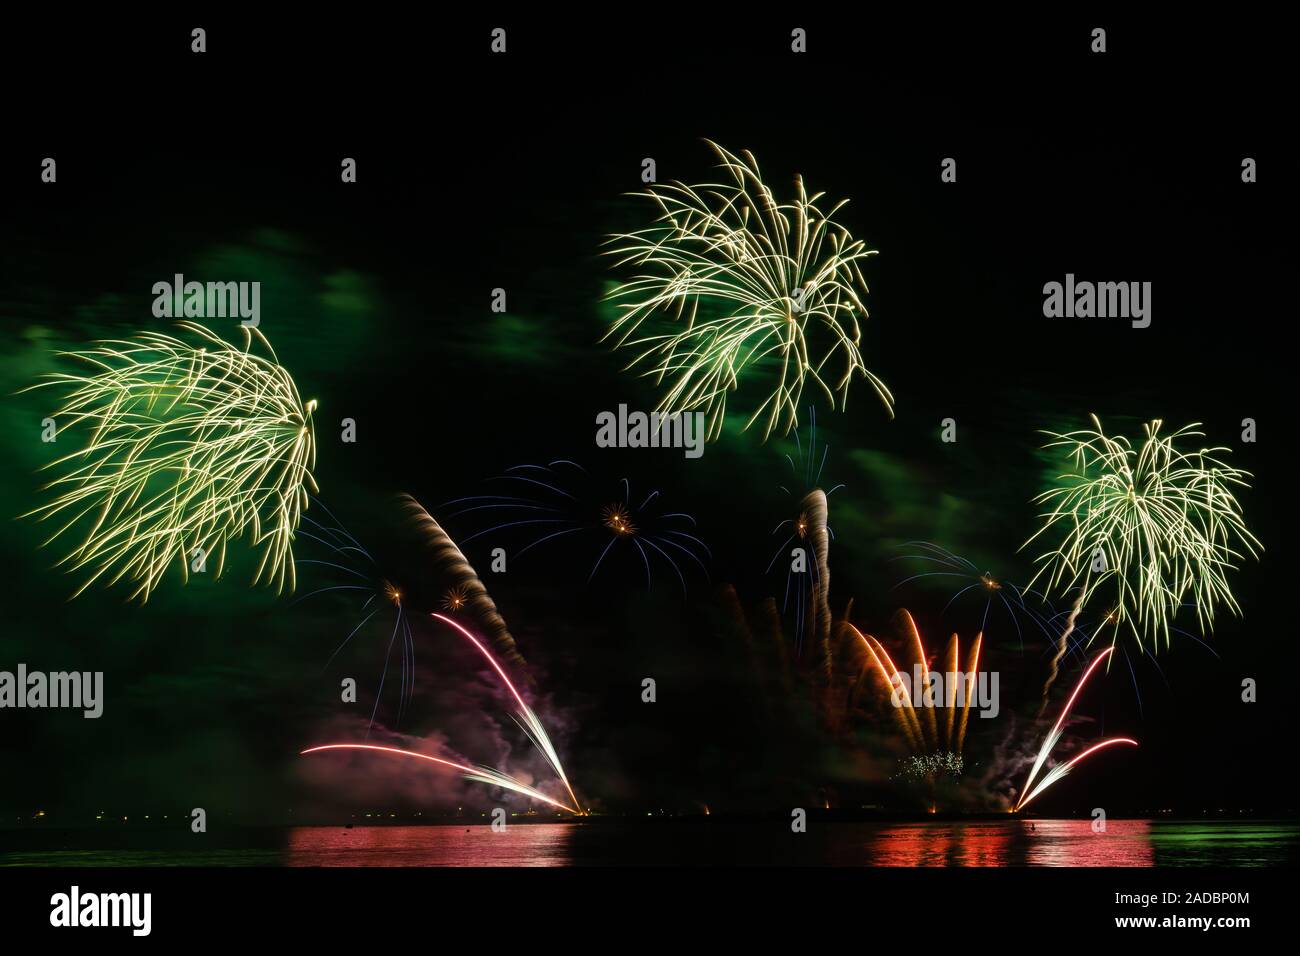 Firework festival célébration magnifique compte à rebours colorés joyeux noël bonne année ciel noir brillant éclat joyeux anniversaire Banque D'Images